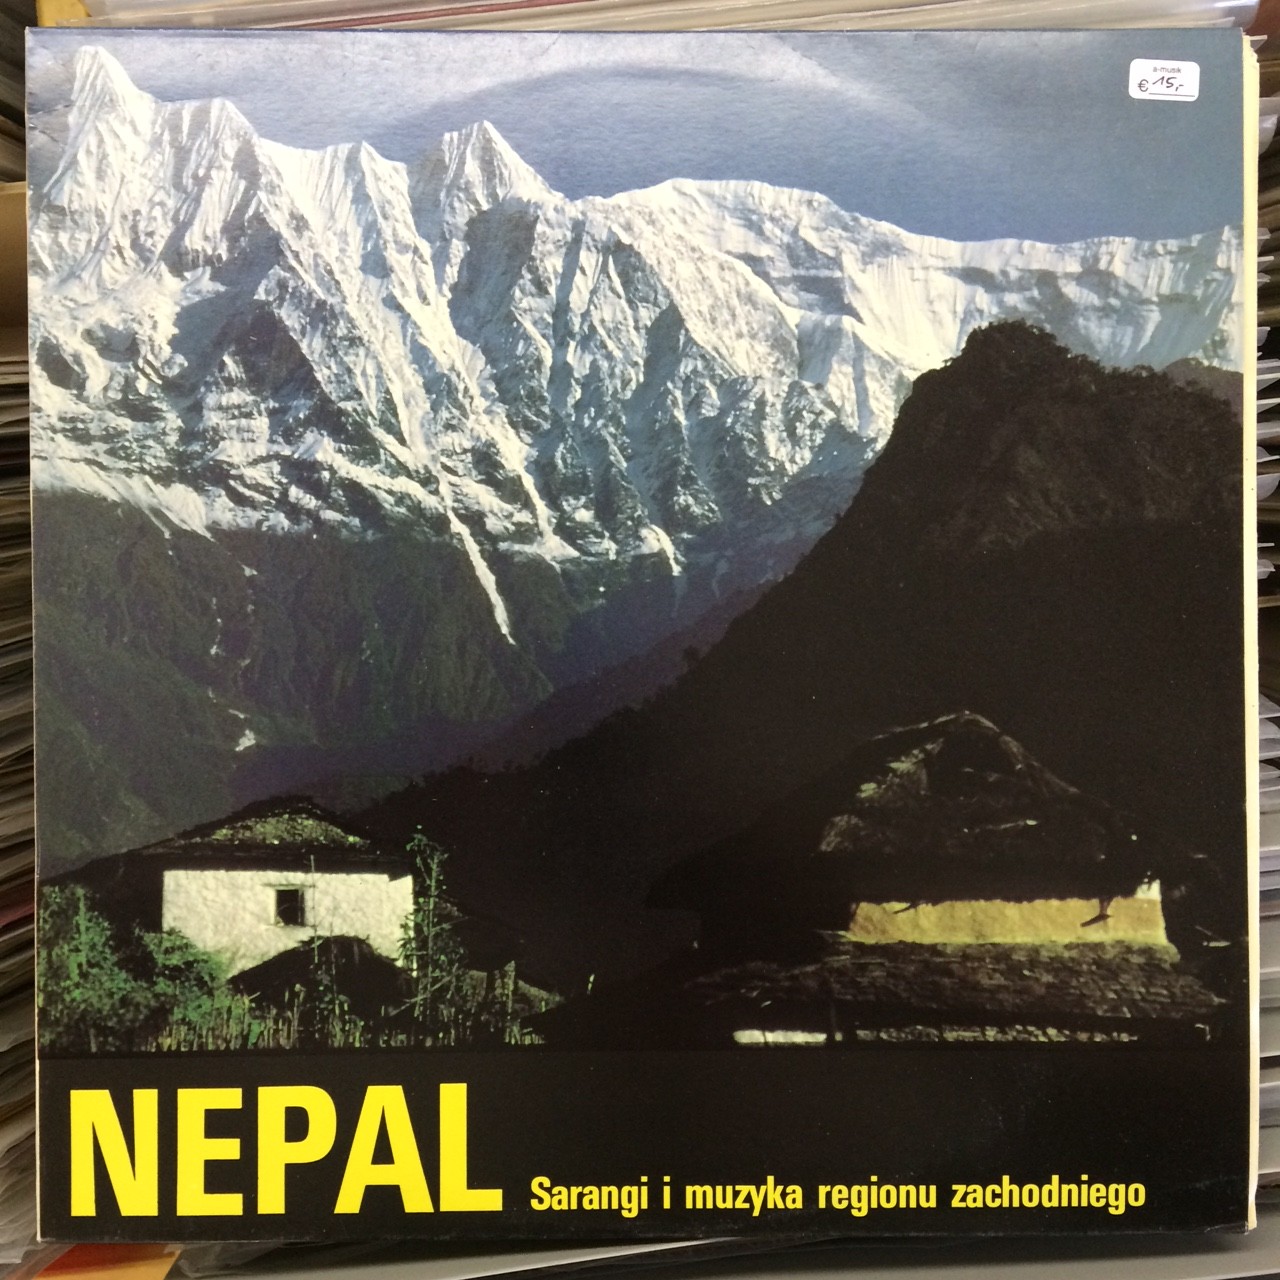 Nepal – sarangi i muzyka regionu zachodniego [по заказу польской фирмы POLJAZZ PSJ249]